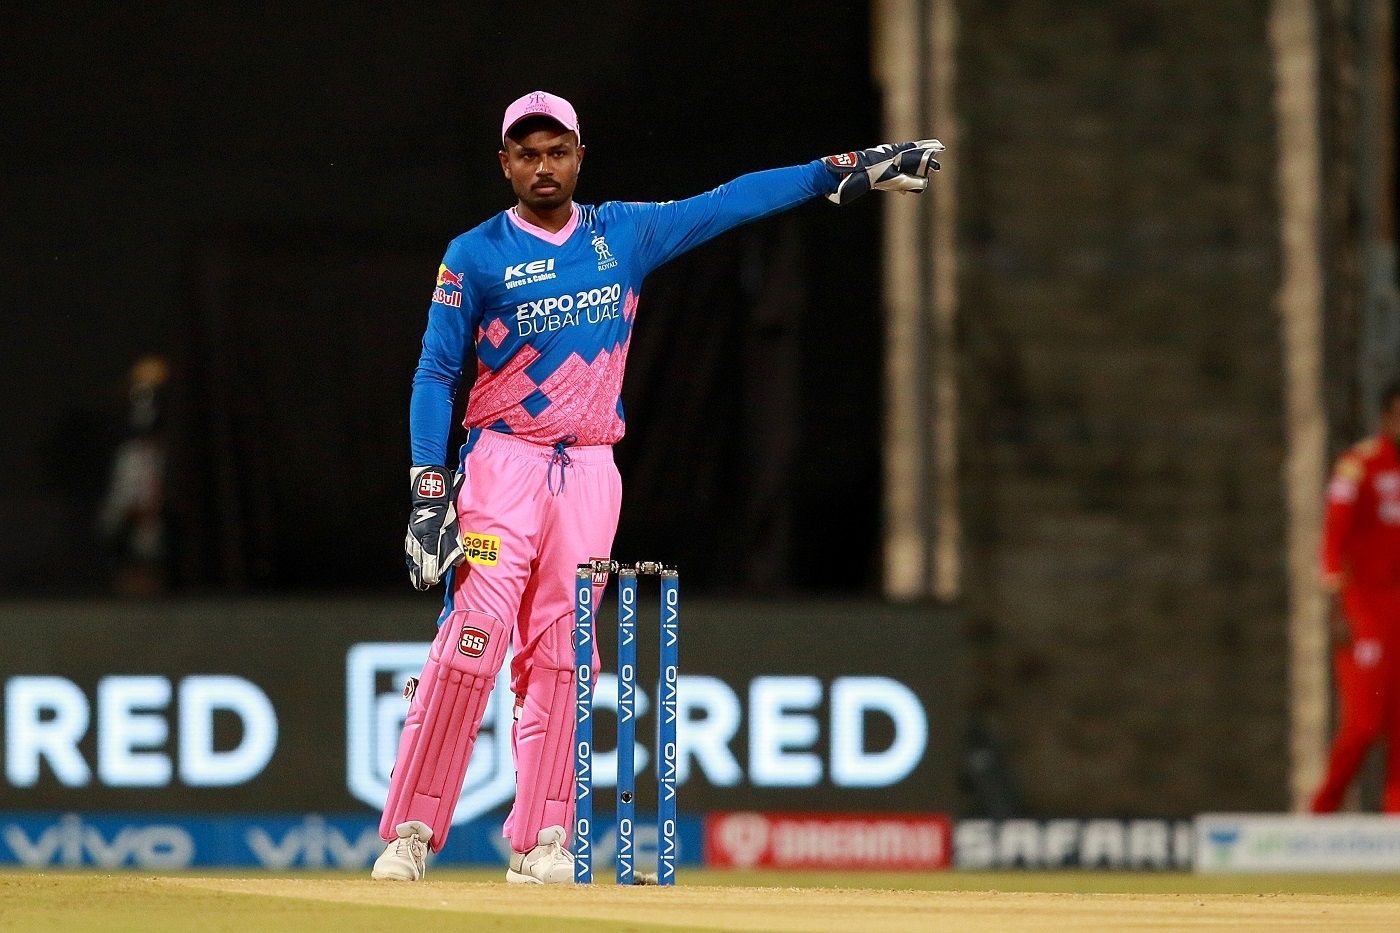 गेंदबाजी कोच लसिथ मलिंगा ने टीम में मेरे लिए कई चीजों को आसान किया: संजू सैमसन